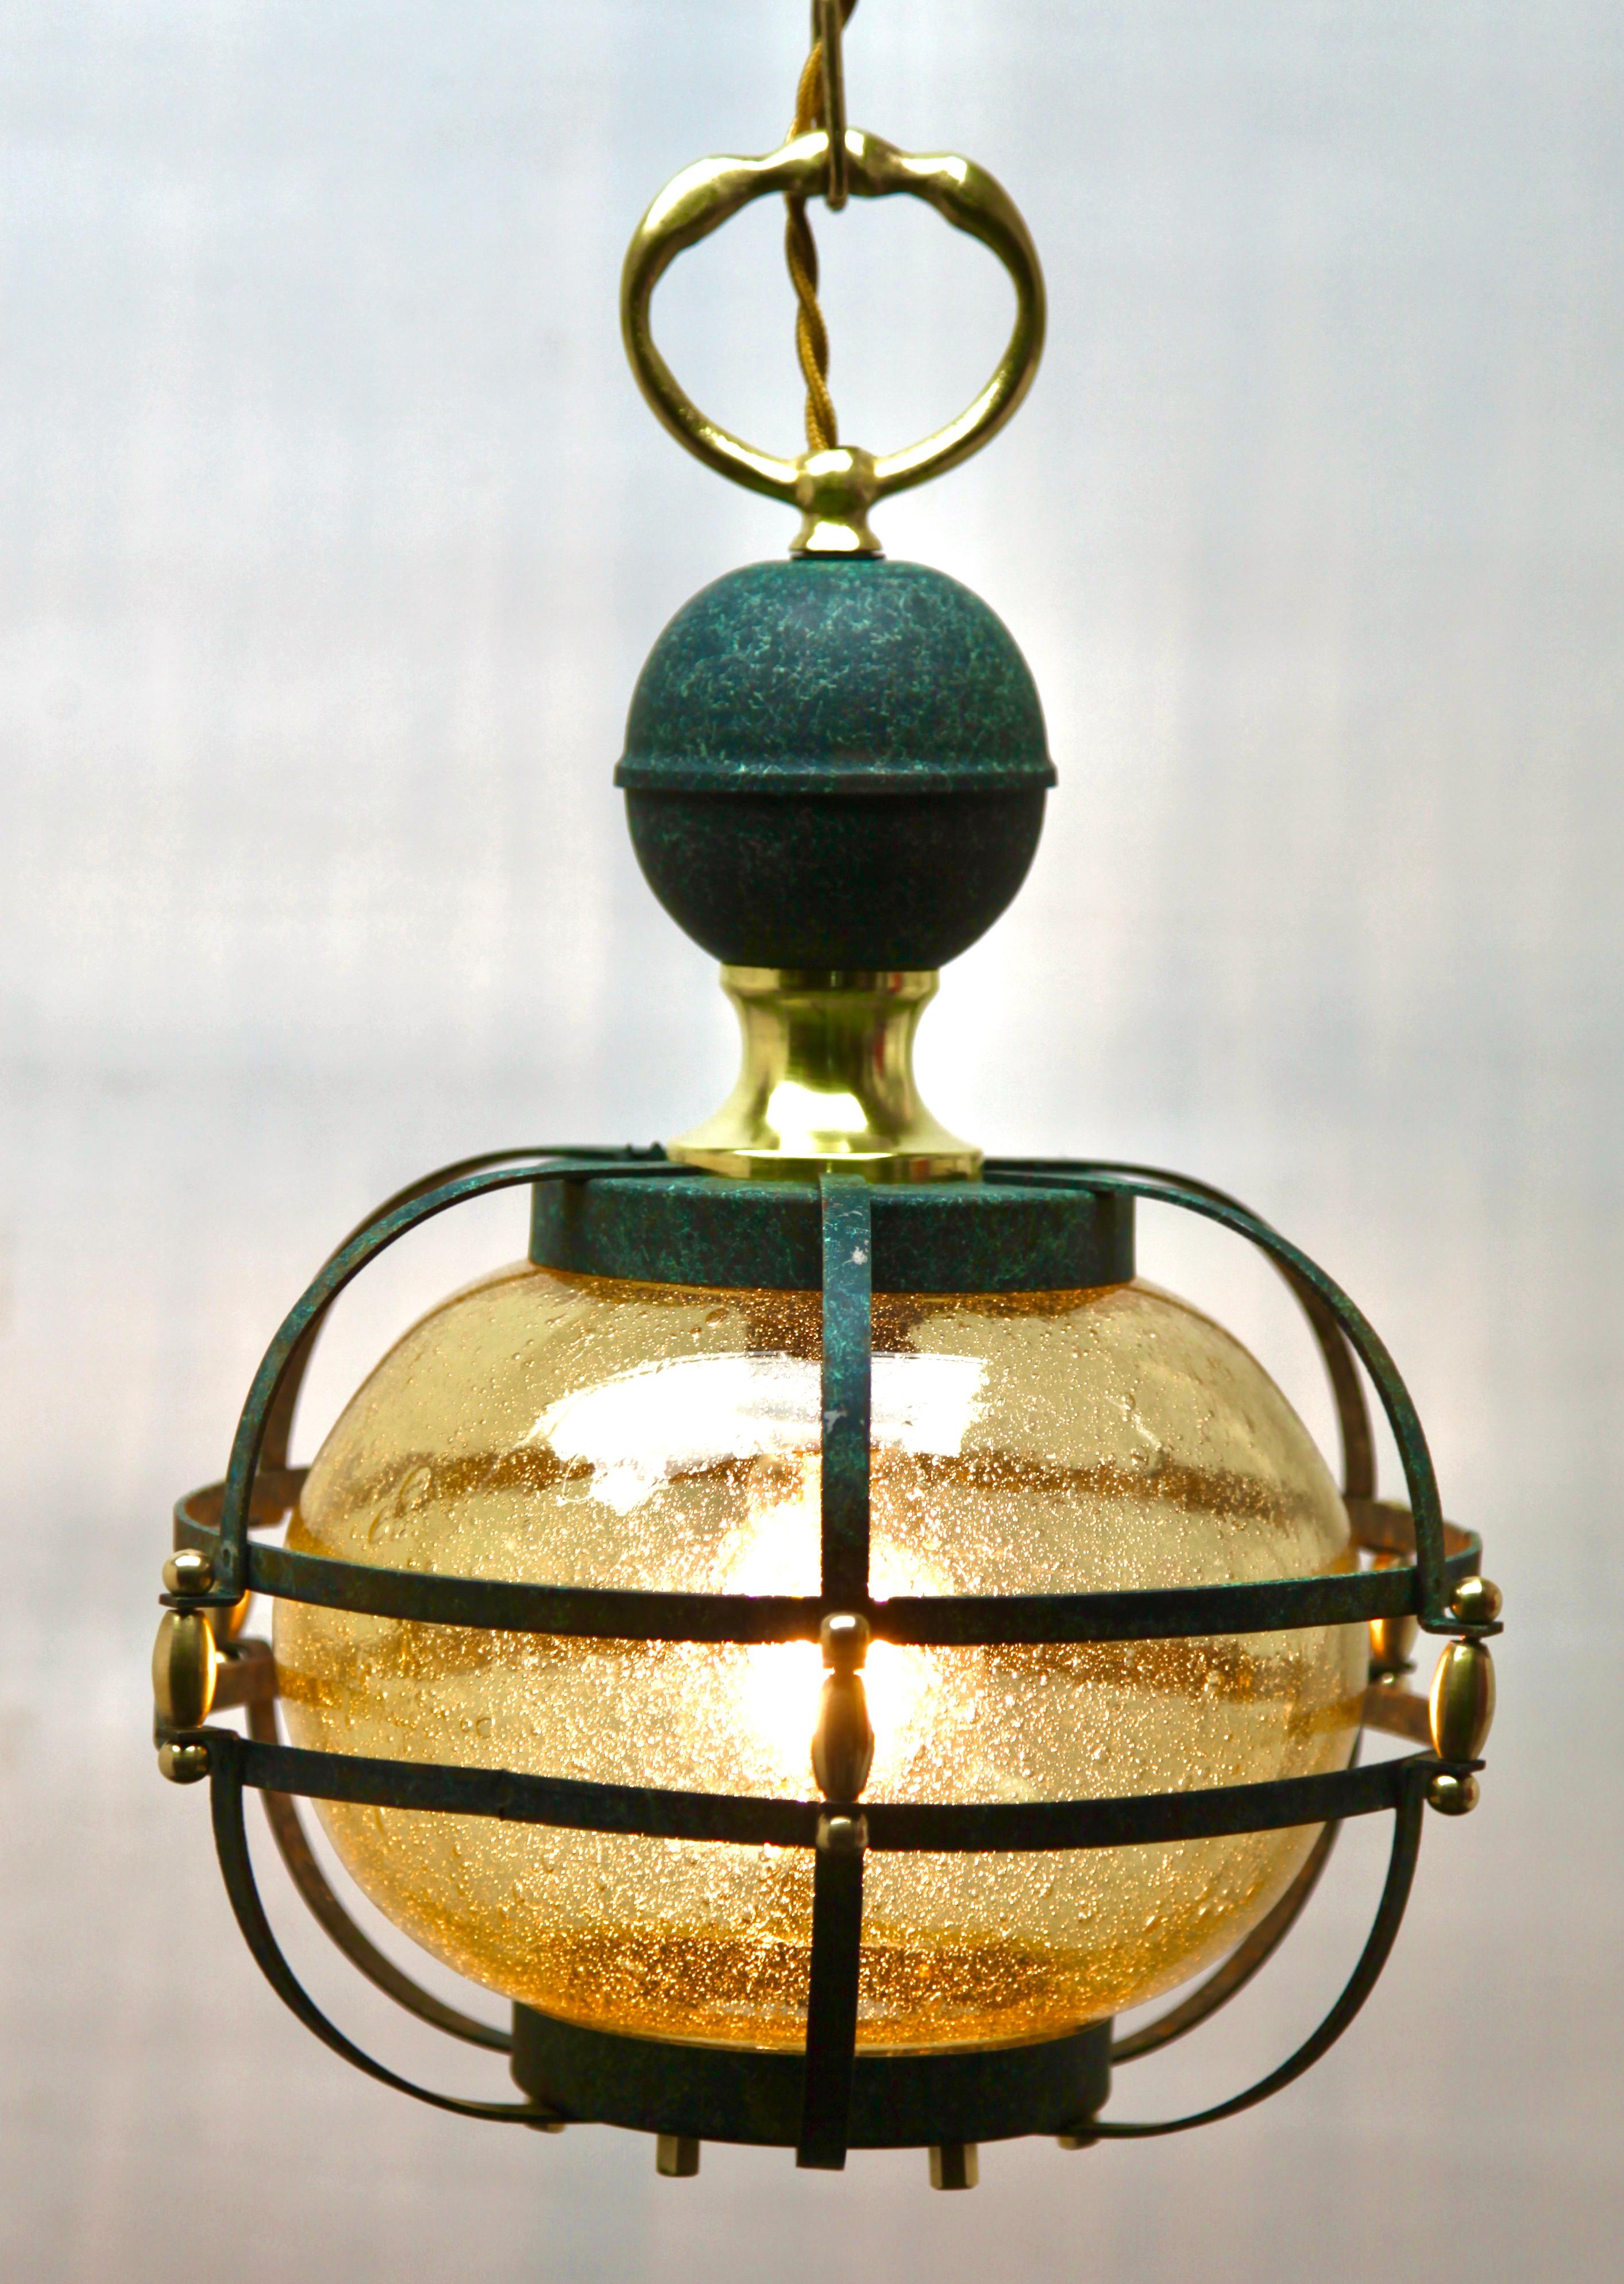 
Hängeleuchten aus den späten 1950er Jahren, entworfen im skandinavischen Stil mit einem opalenen Lampenschirm.
Ihre klassisch-moderne Form und ihr schlichtes Design machen sie zu einer Ikone der Lobbybeleuchtung aus der Mitte des Jahrhunderts.
In